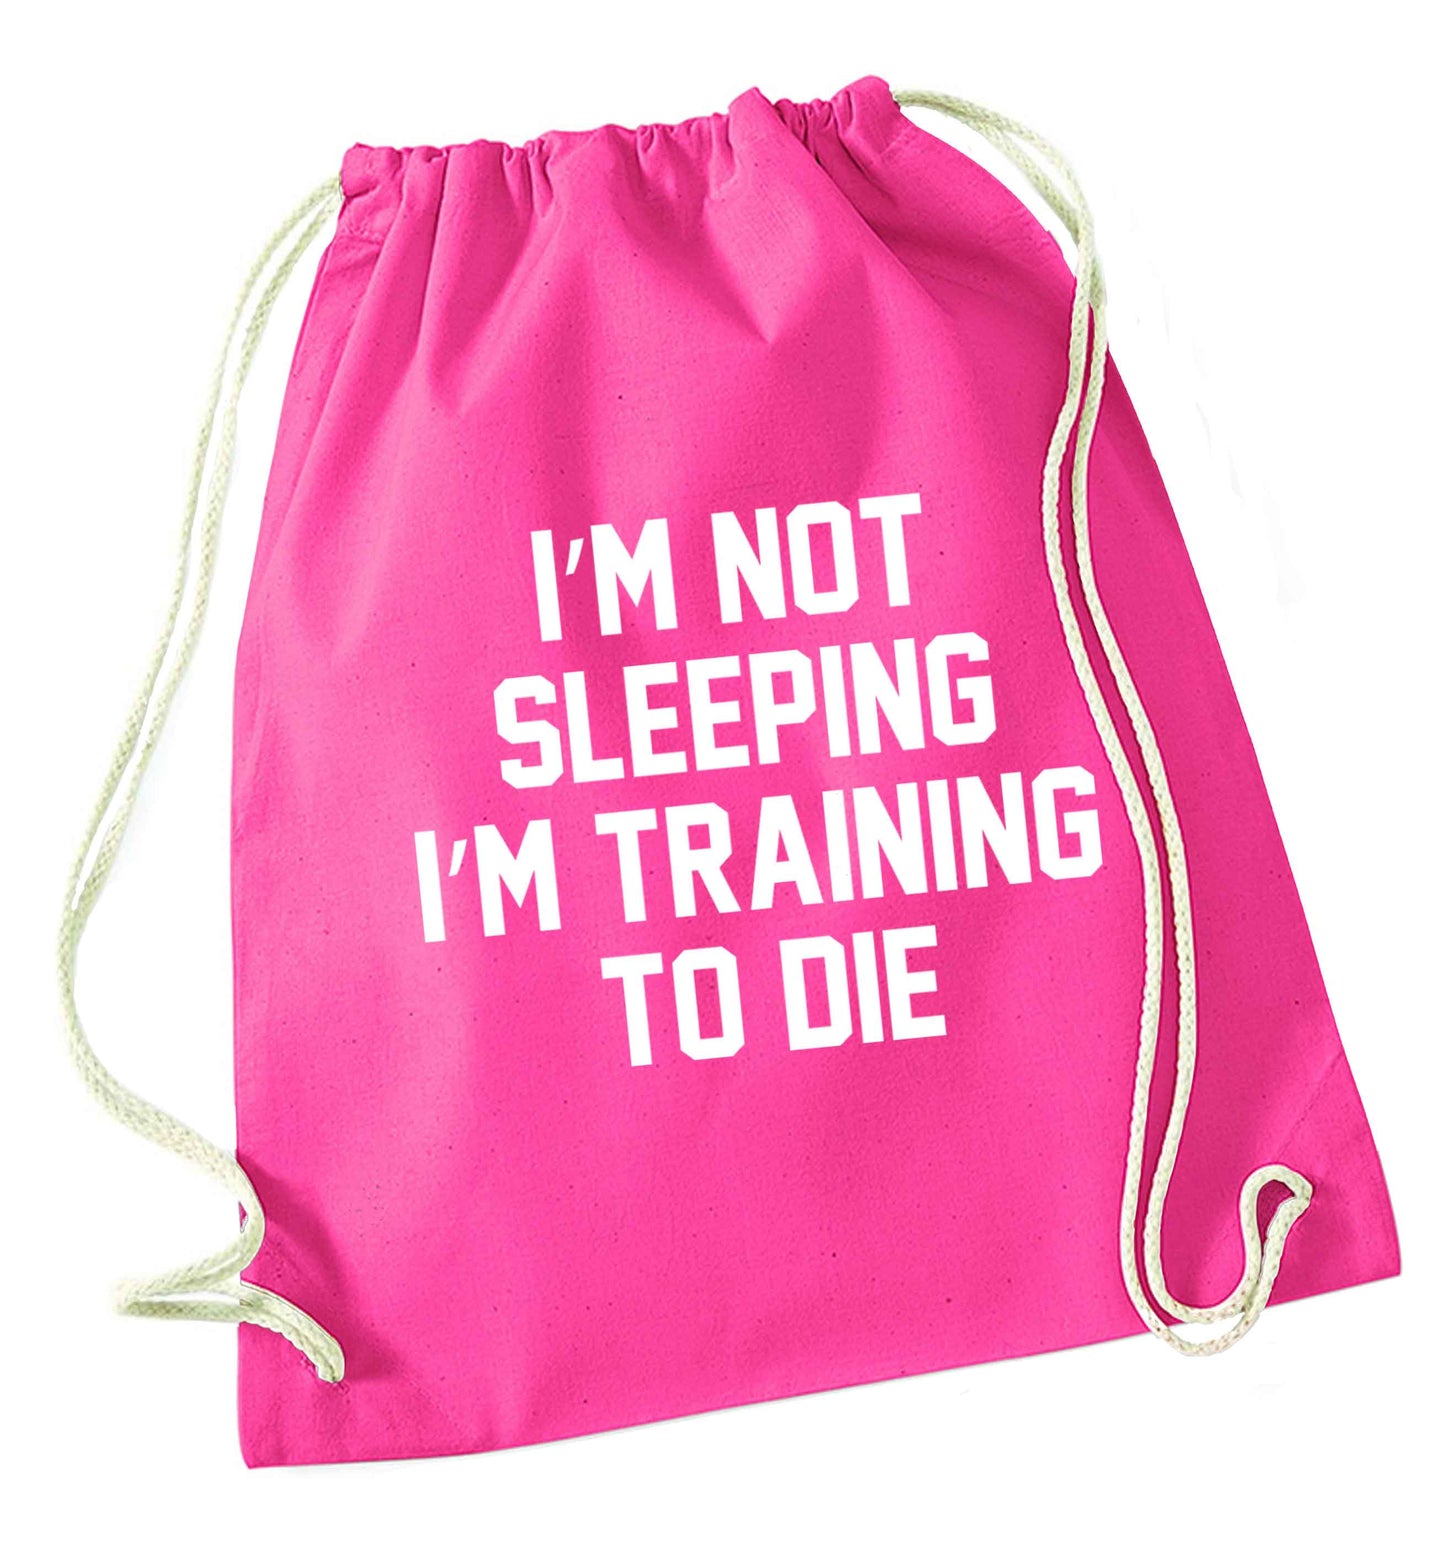 I'm not sleeping I'm training to die pink drawstring bag